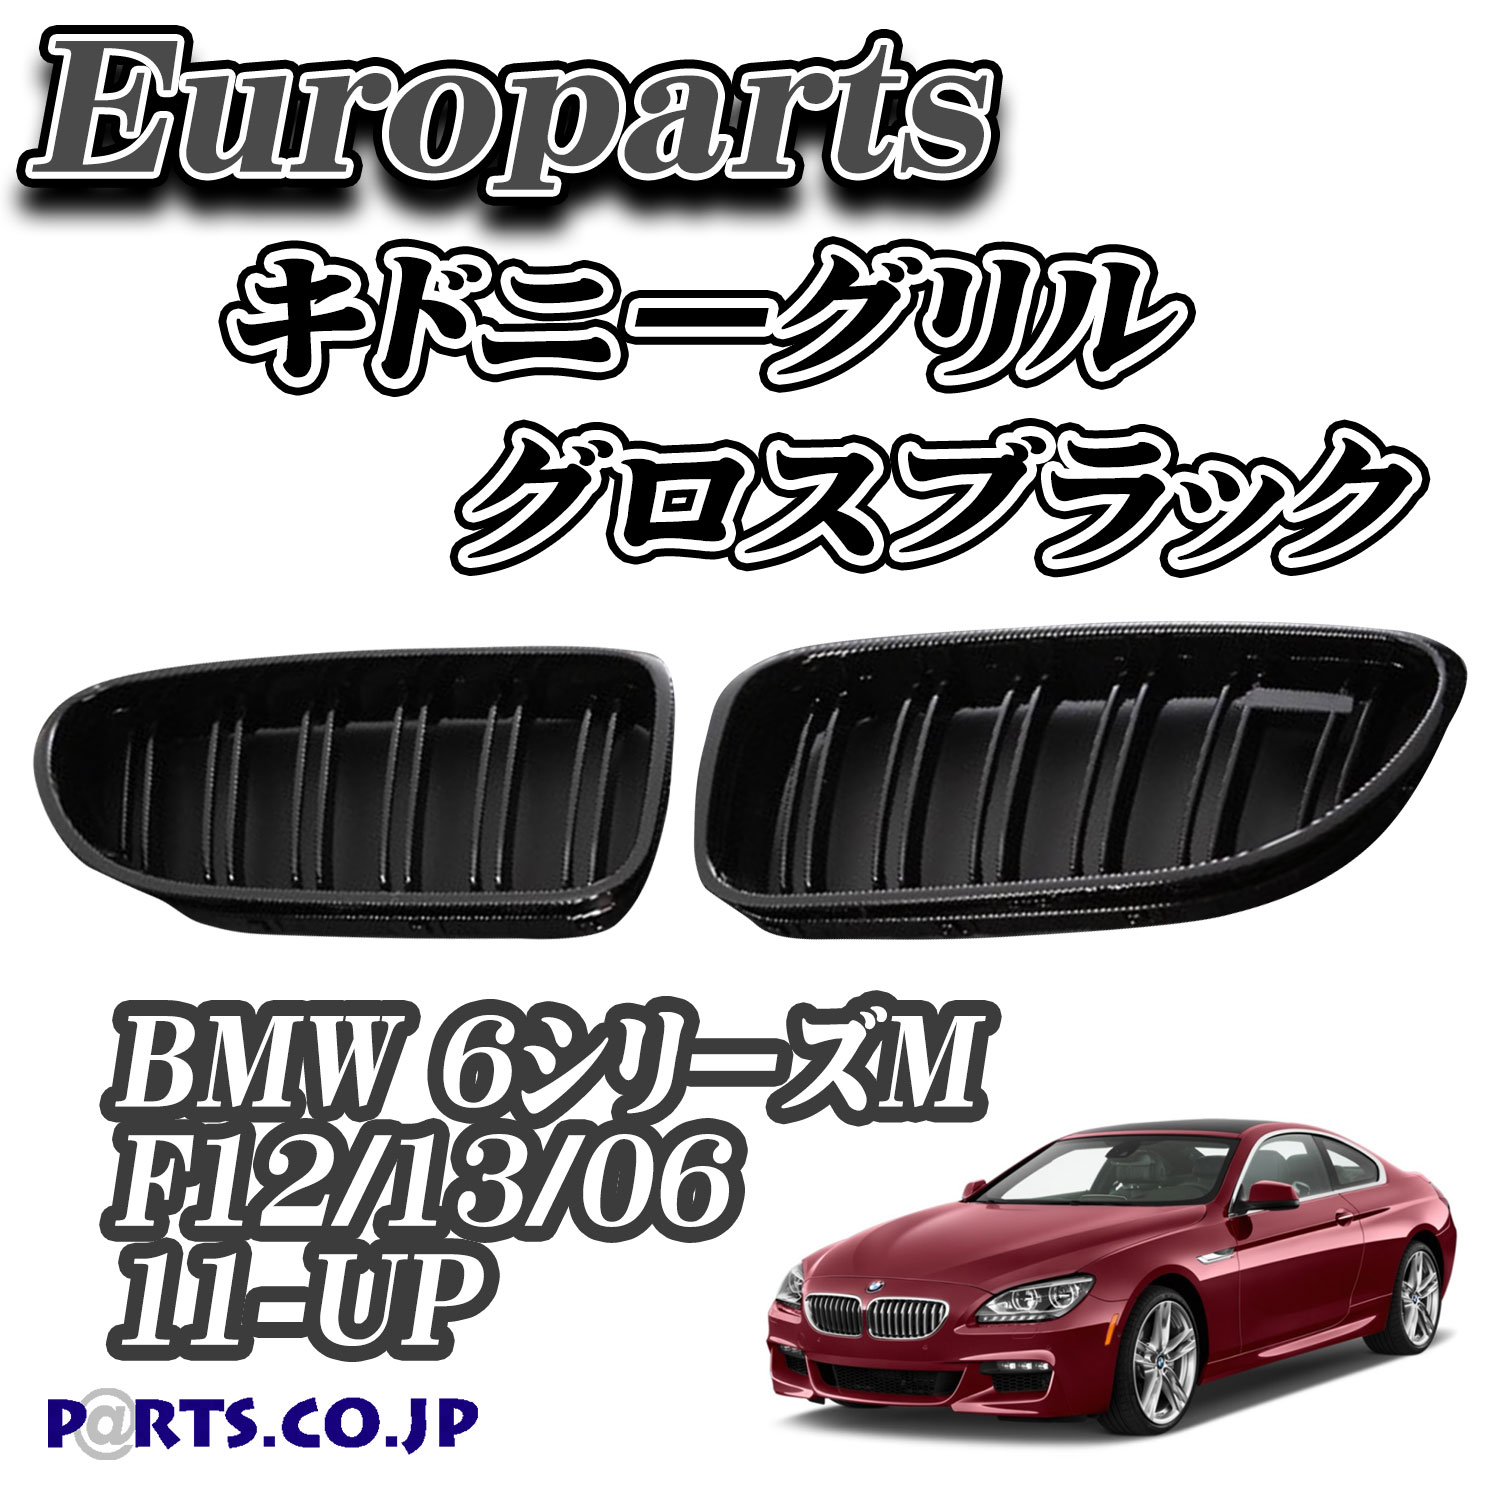 日時指定 Europarts ユーロパーツ BMW 6シリーズM F12 13 06 グリル キドニーグリル 11-